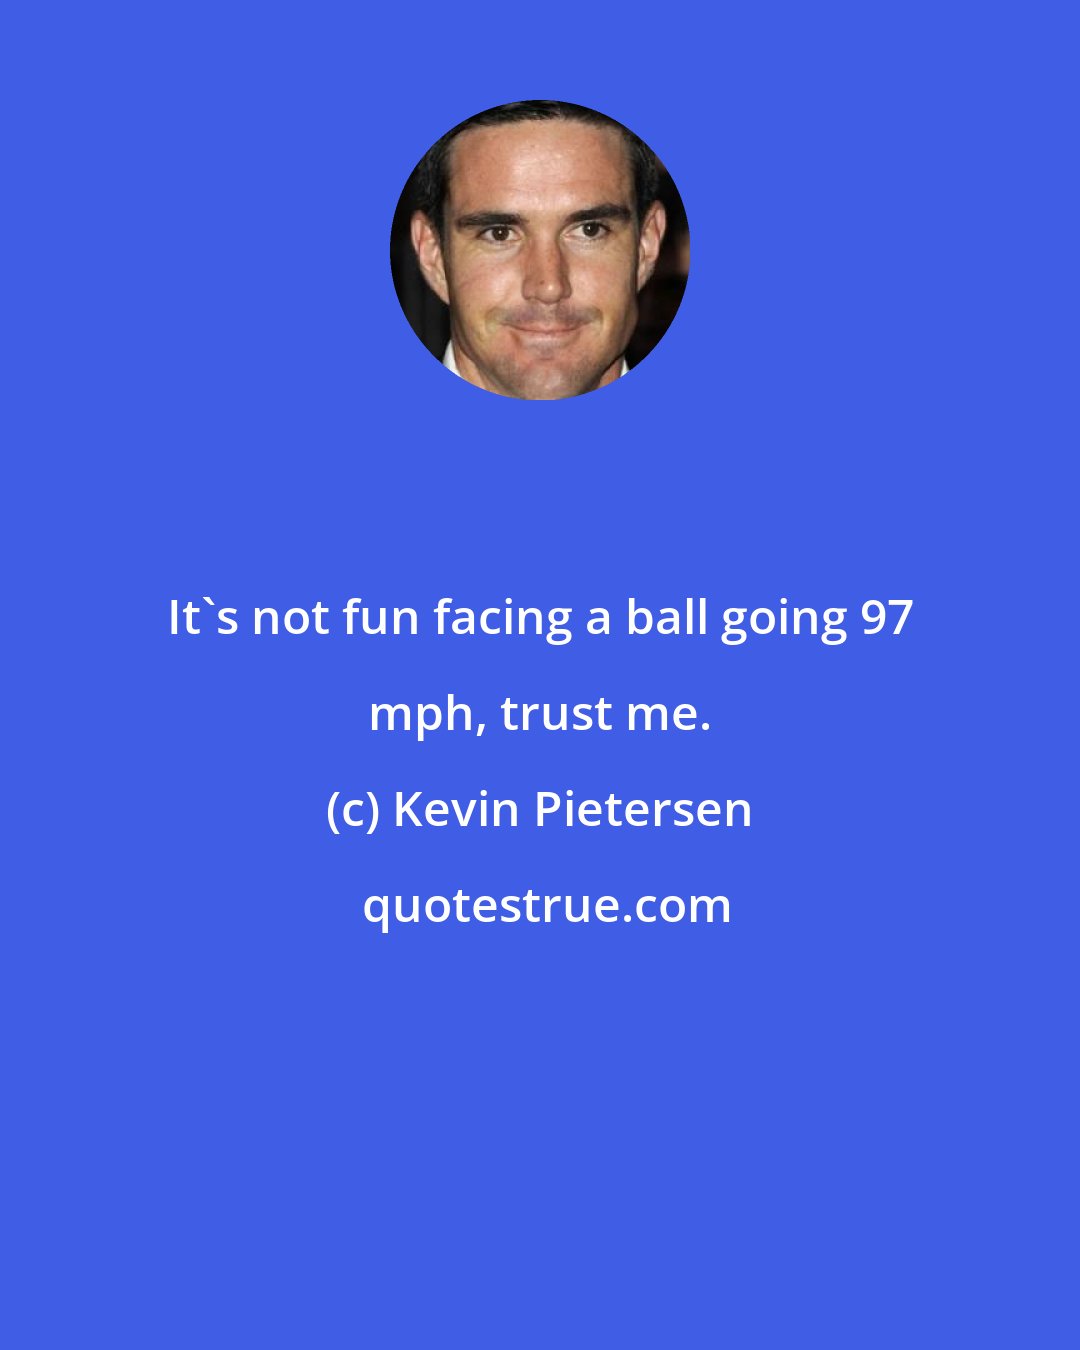 Kevin Pietersen: It's not fun facing a ball going 97 mph, trust me.